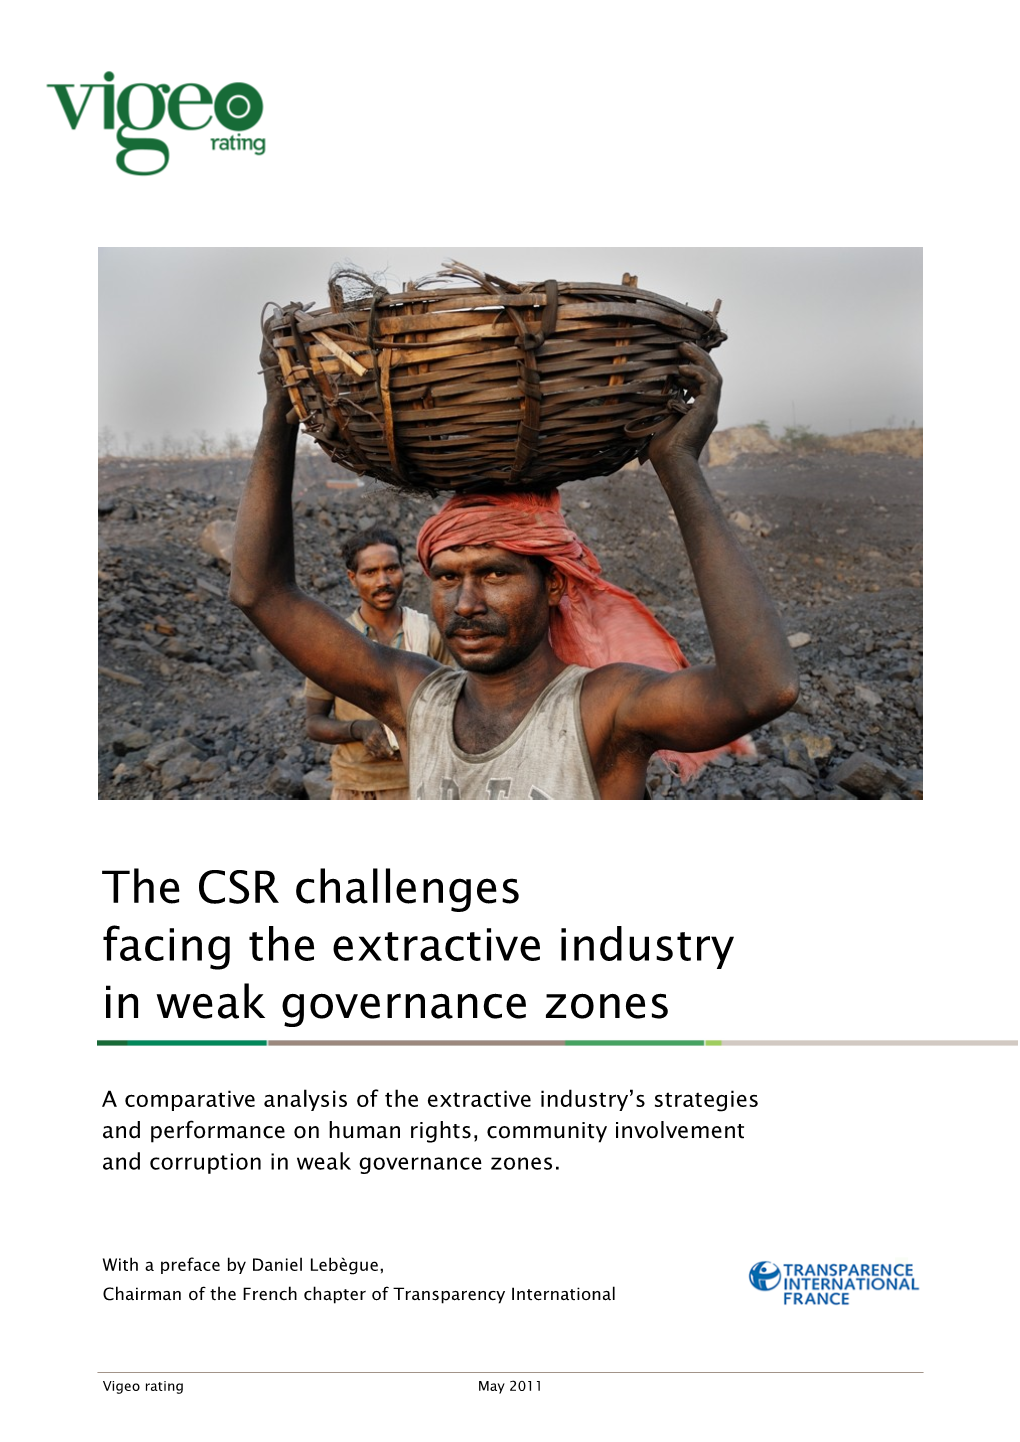 The CSR Challenges Facing the Extractive Industry in Weak Governance Zones